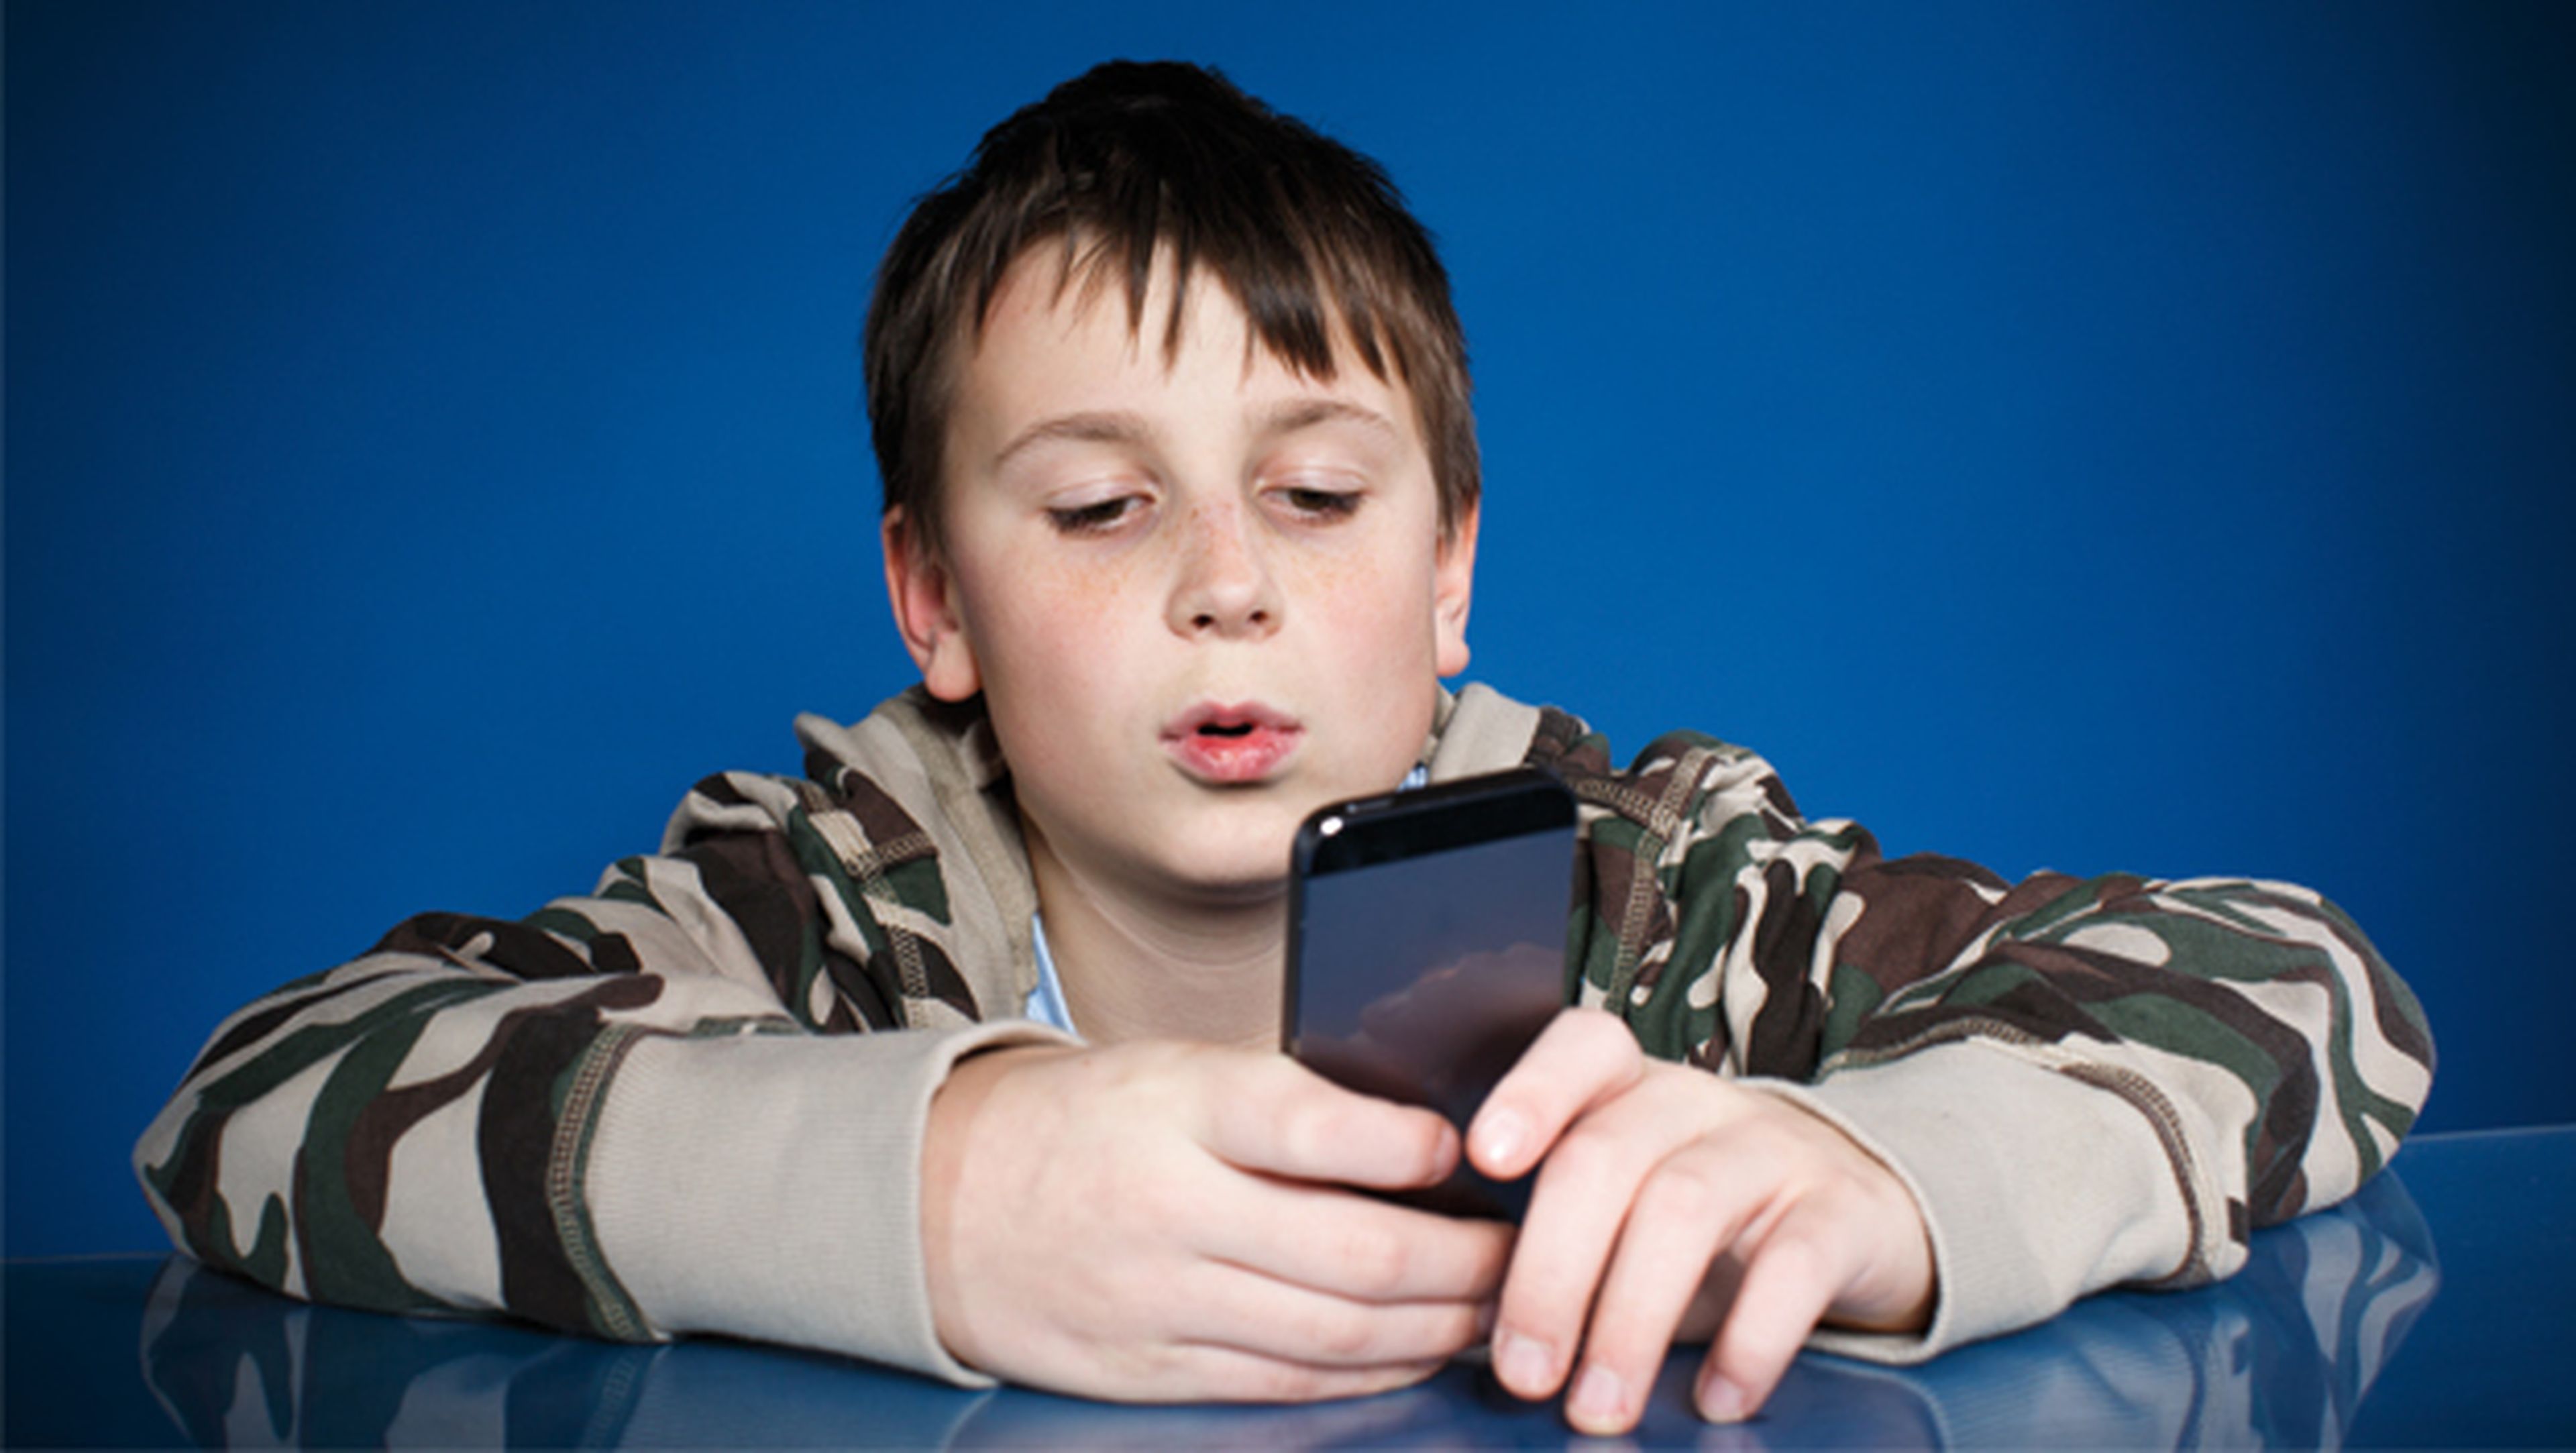 Móvil y tablet, ¿perjudiciales para la vista de los niños?